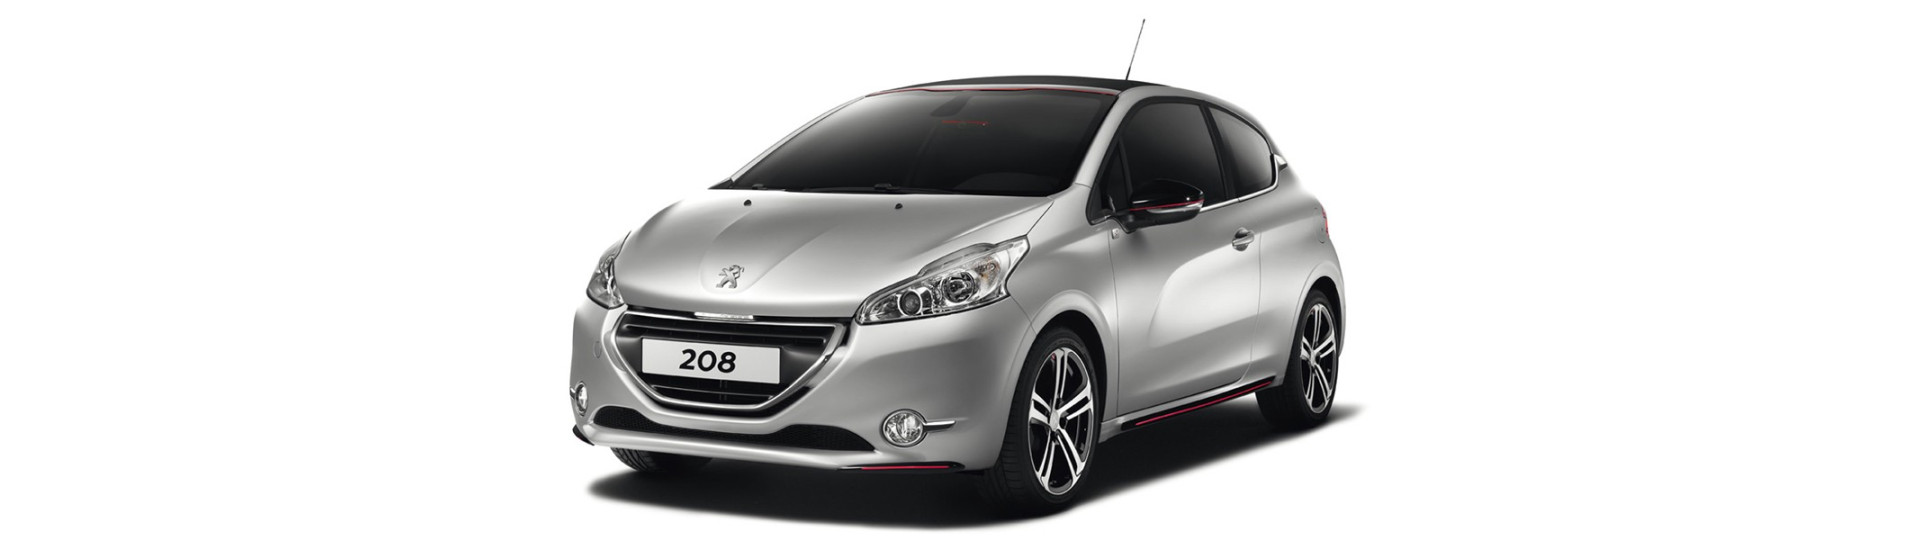 Navigatie Peugeot 208 cu radio, bluetooth, dvd, harti igo incluse si pastrarea comenzilor volan